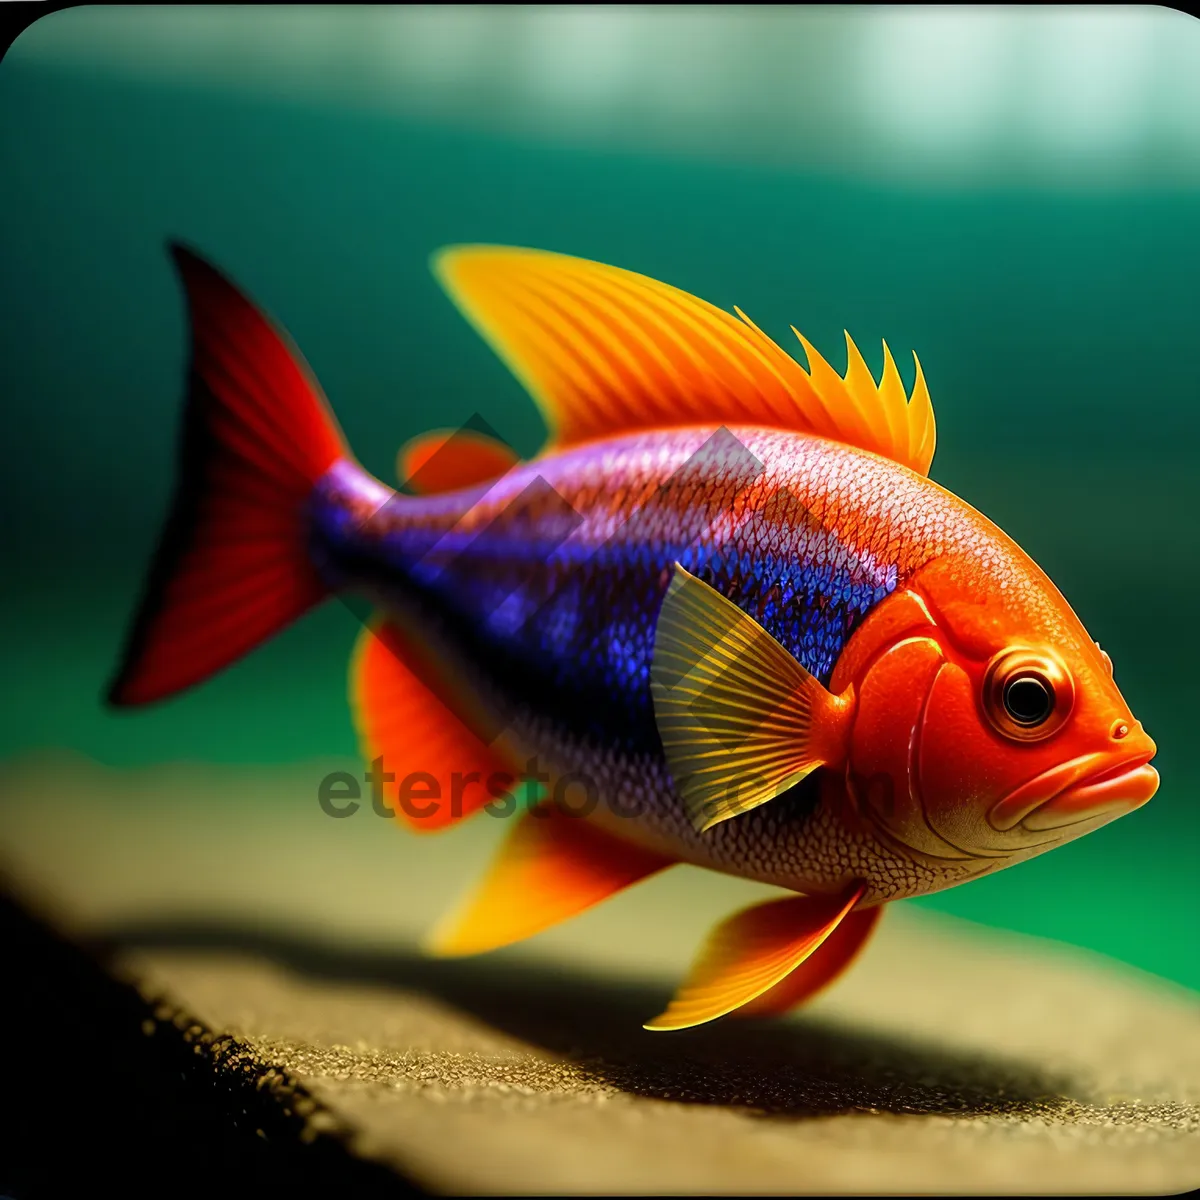 Picture of Tropical Goldfish Swimming in Aquarium Bowl